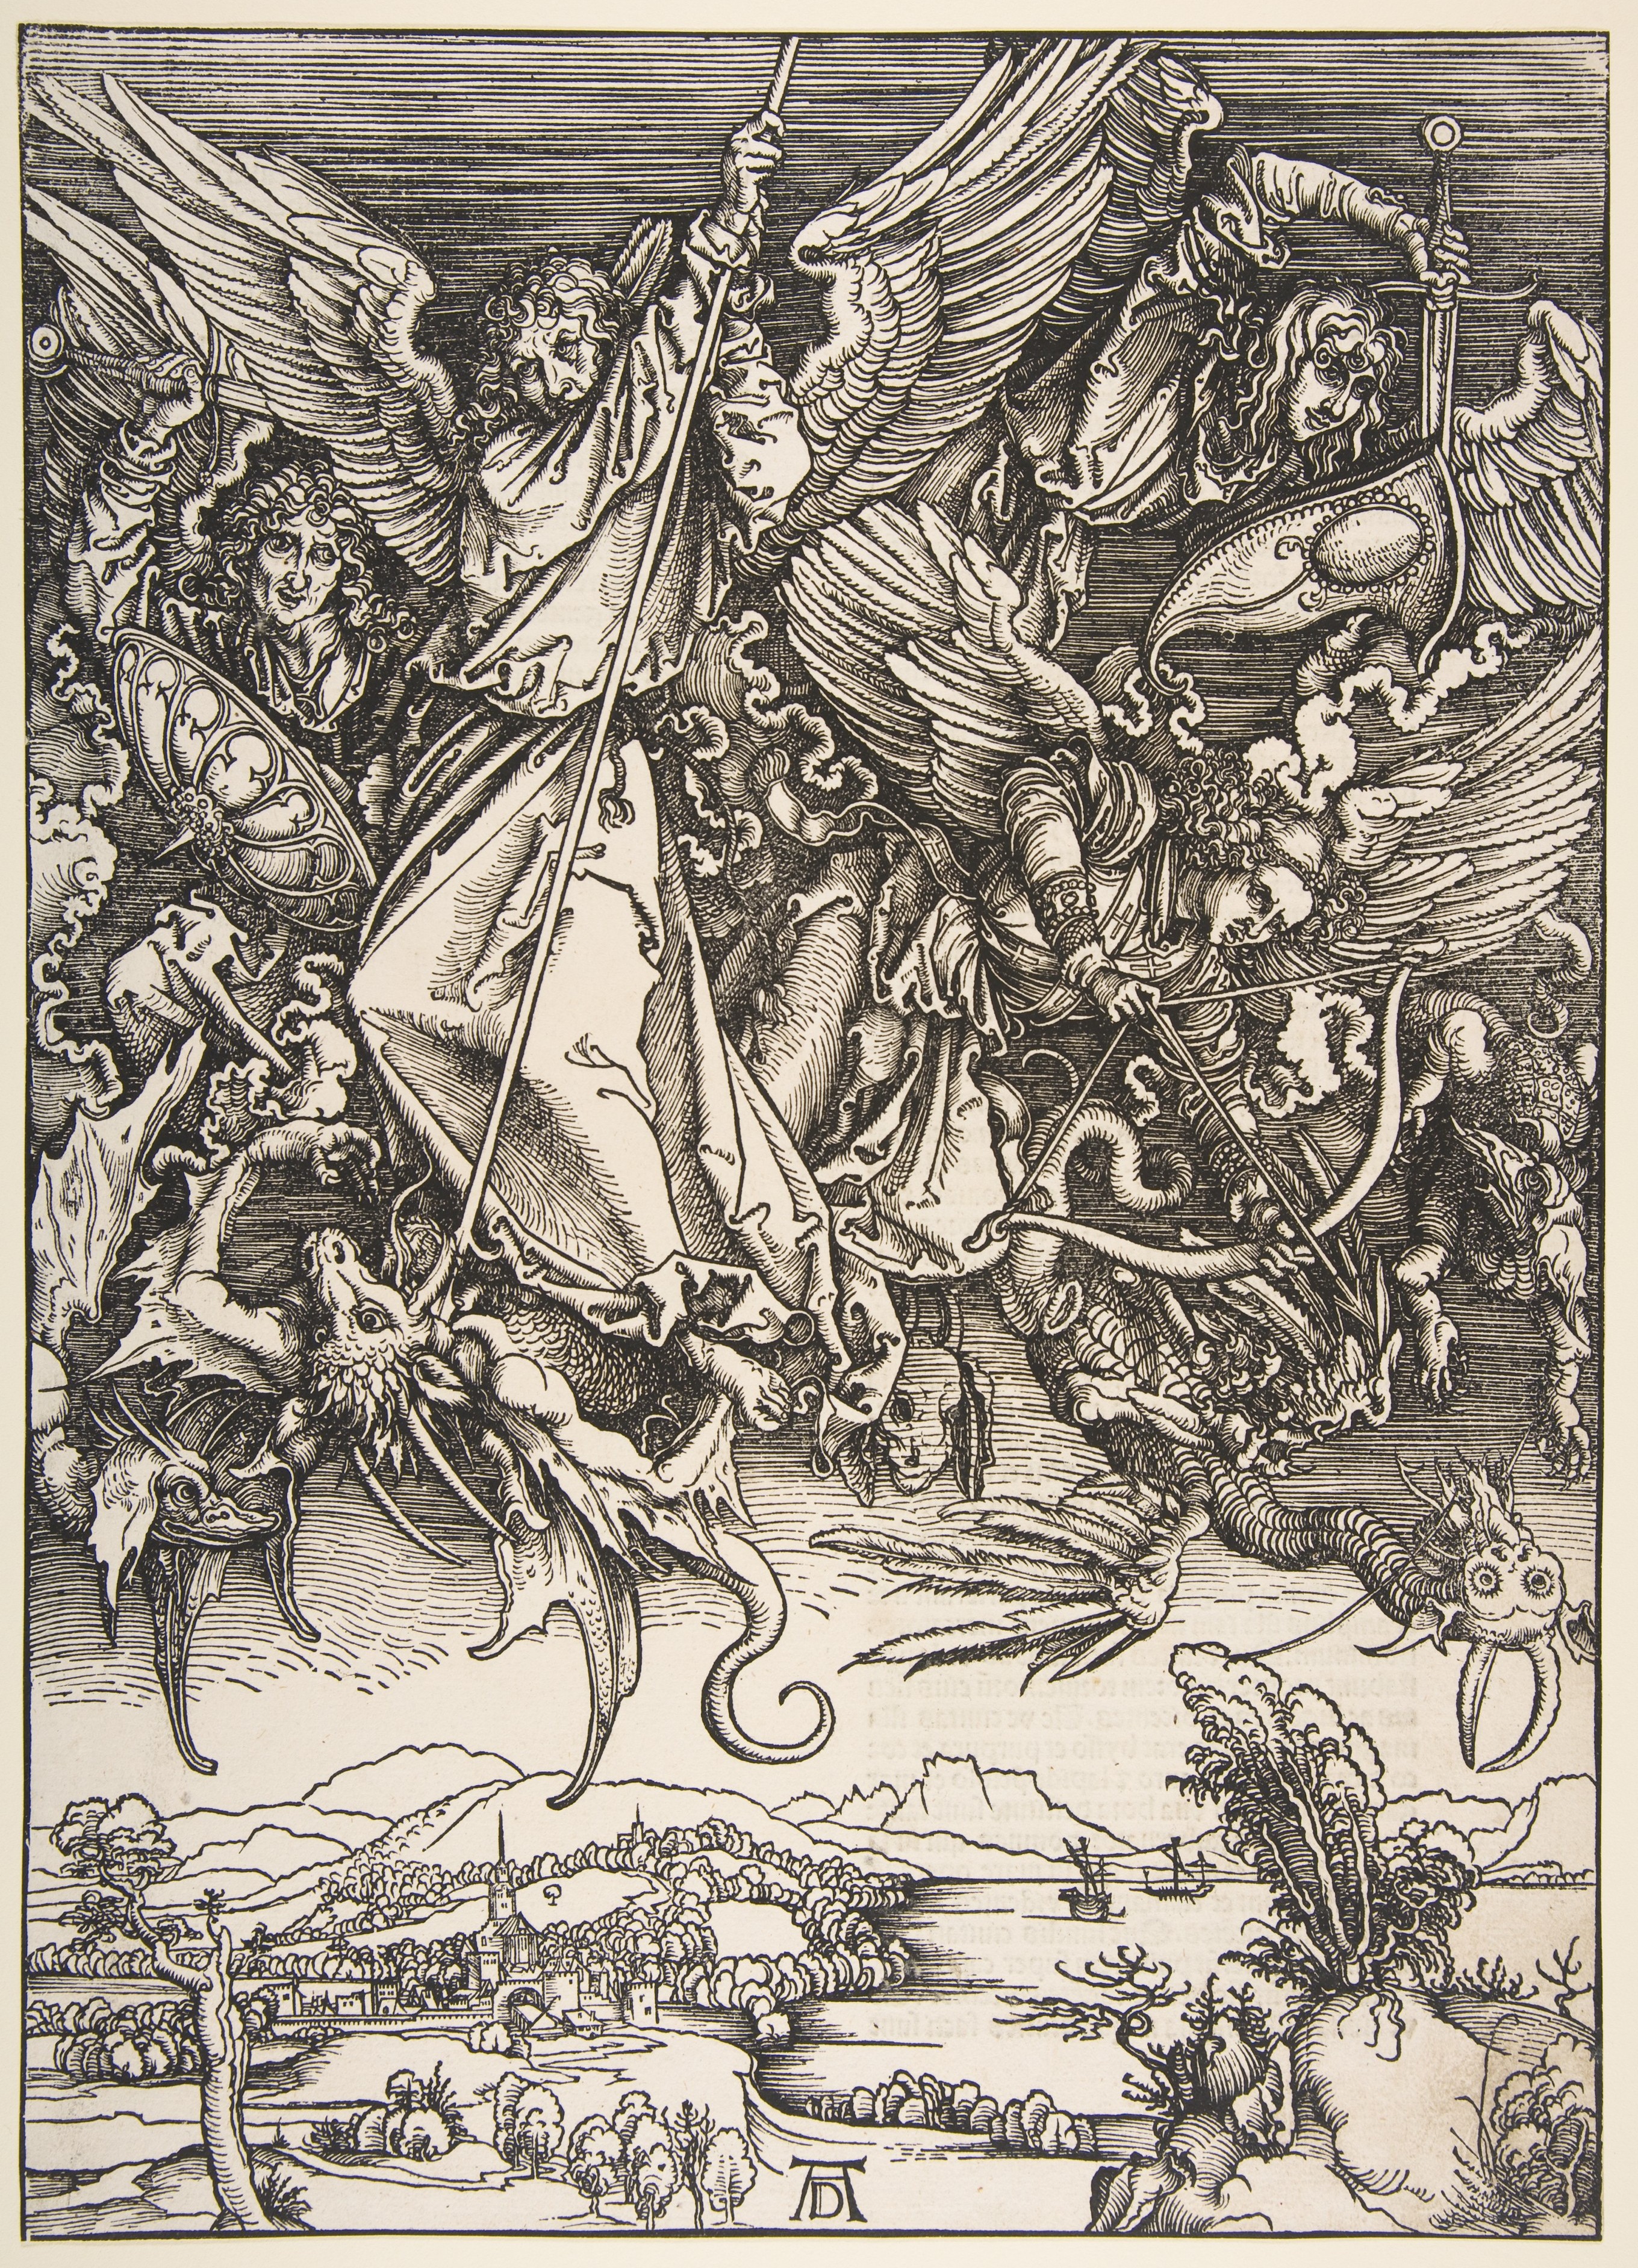 Aziz Mikail Ejderhayla Savaşıyor by Albrecht Dürer - yapımı yaklaşık 1496-1498, basımı 1511 - 39,1 x 28 cm 